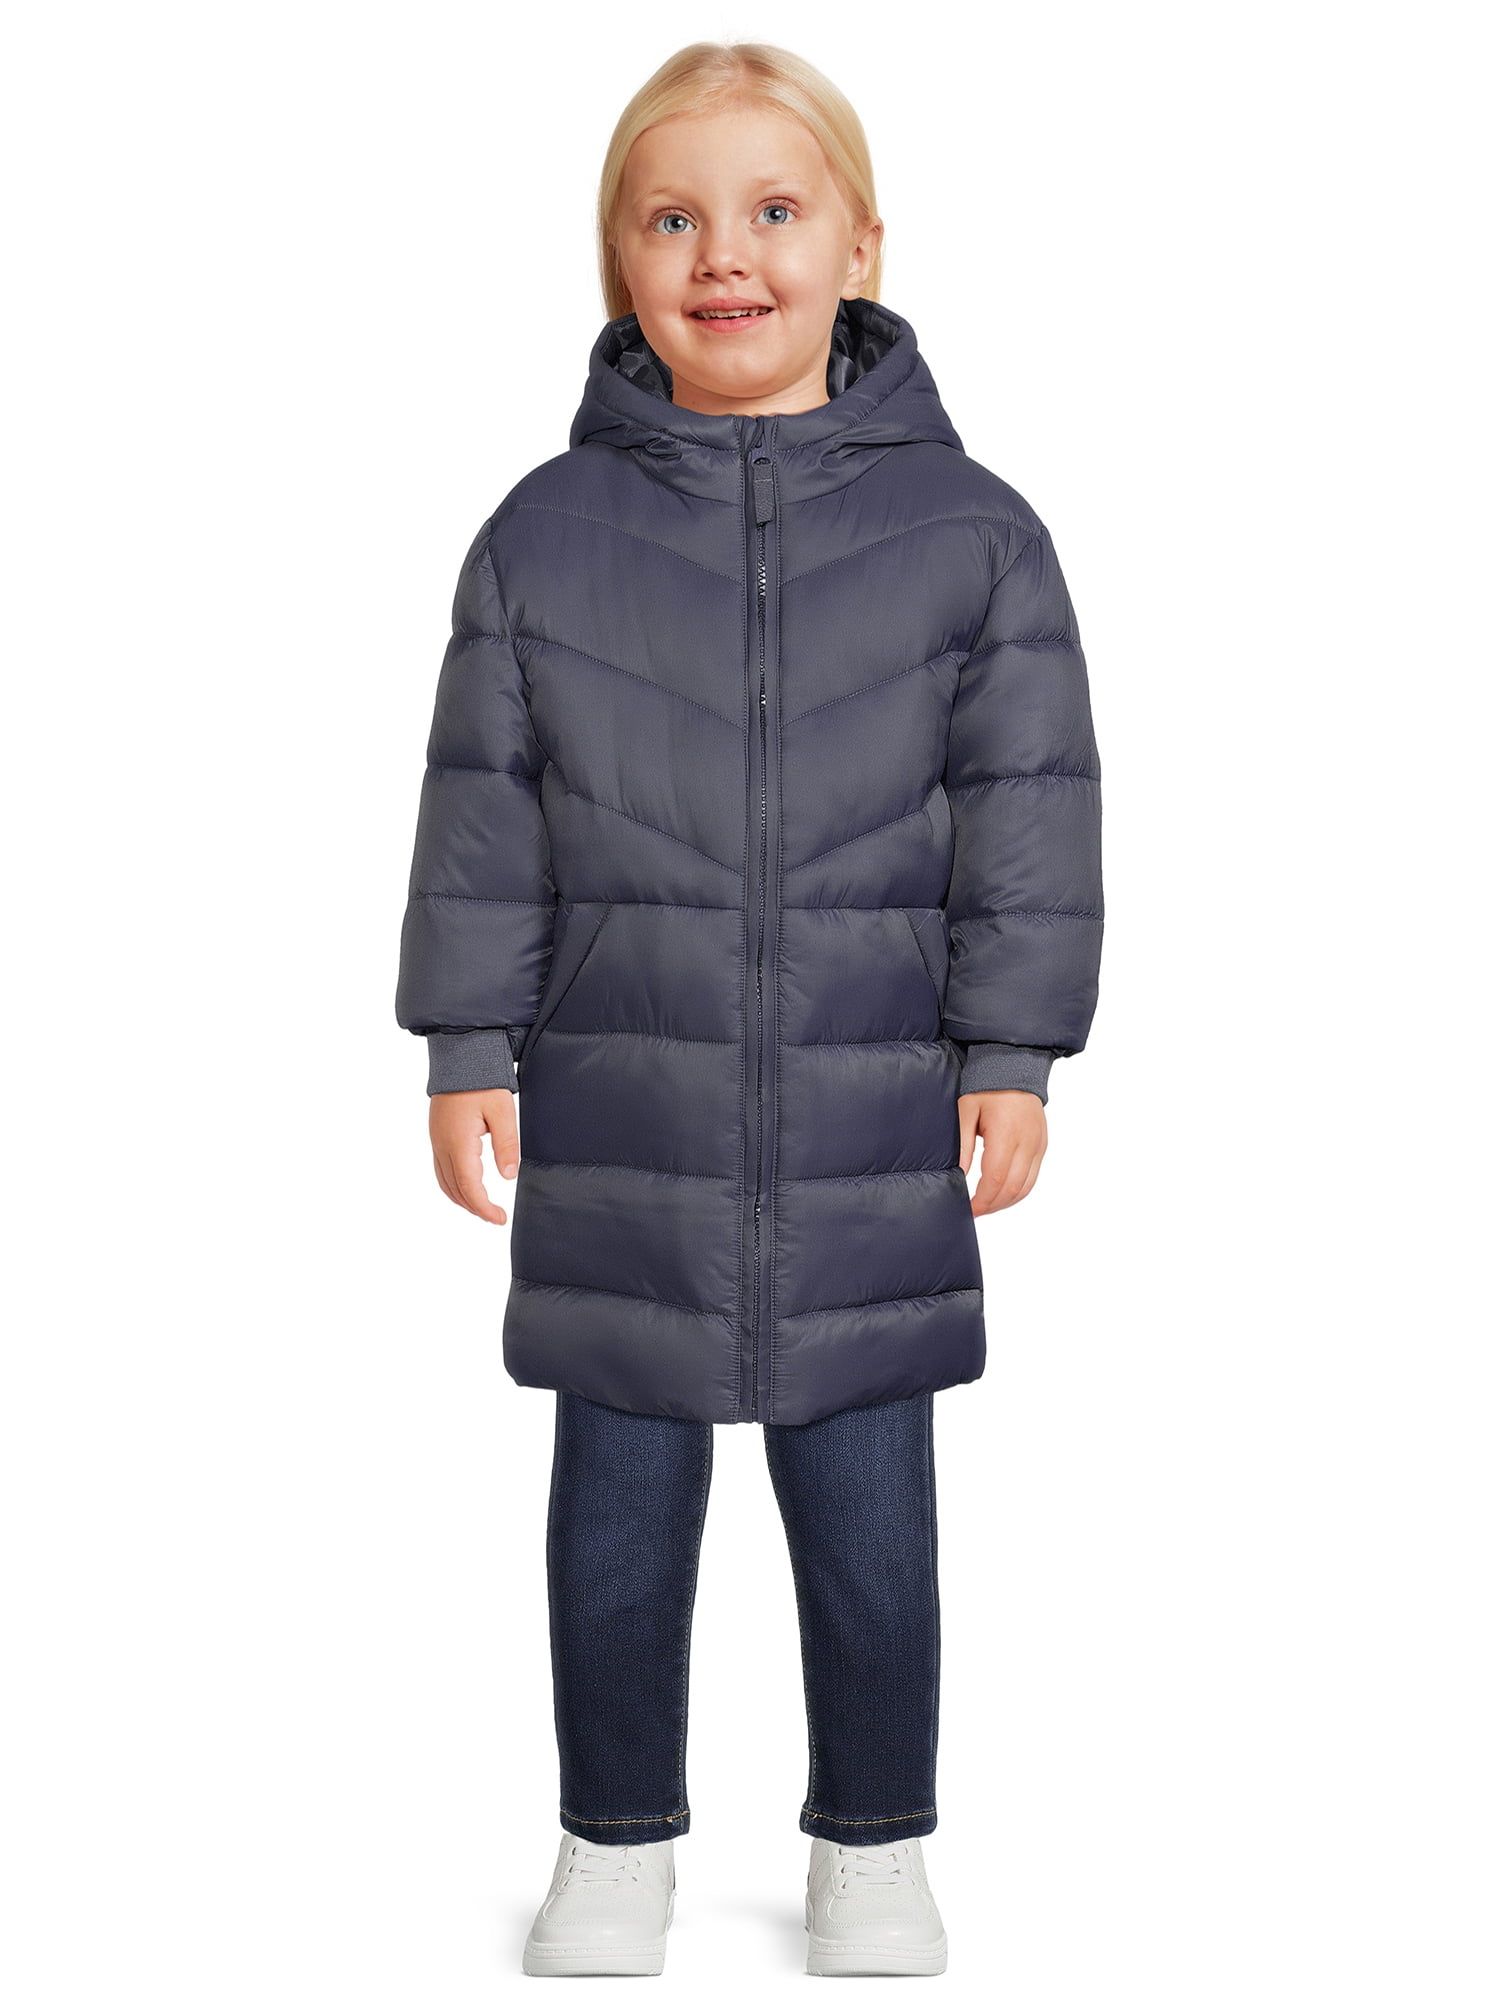 Wonder Nation Toddler Long Length Puffer Jacket, Sizes 12M-5T | Walmart (US)